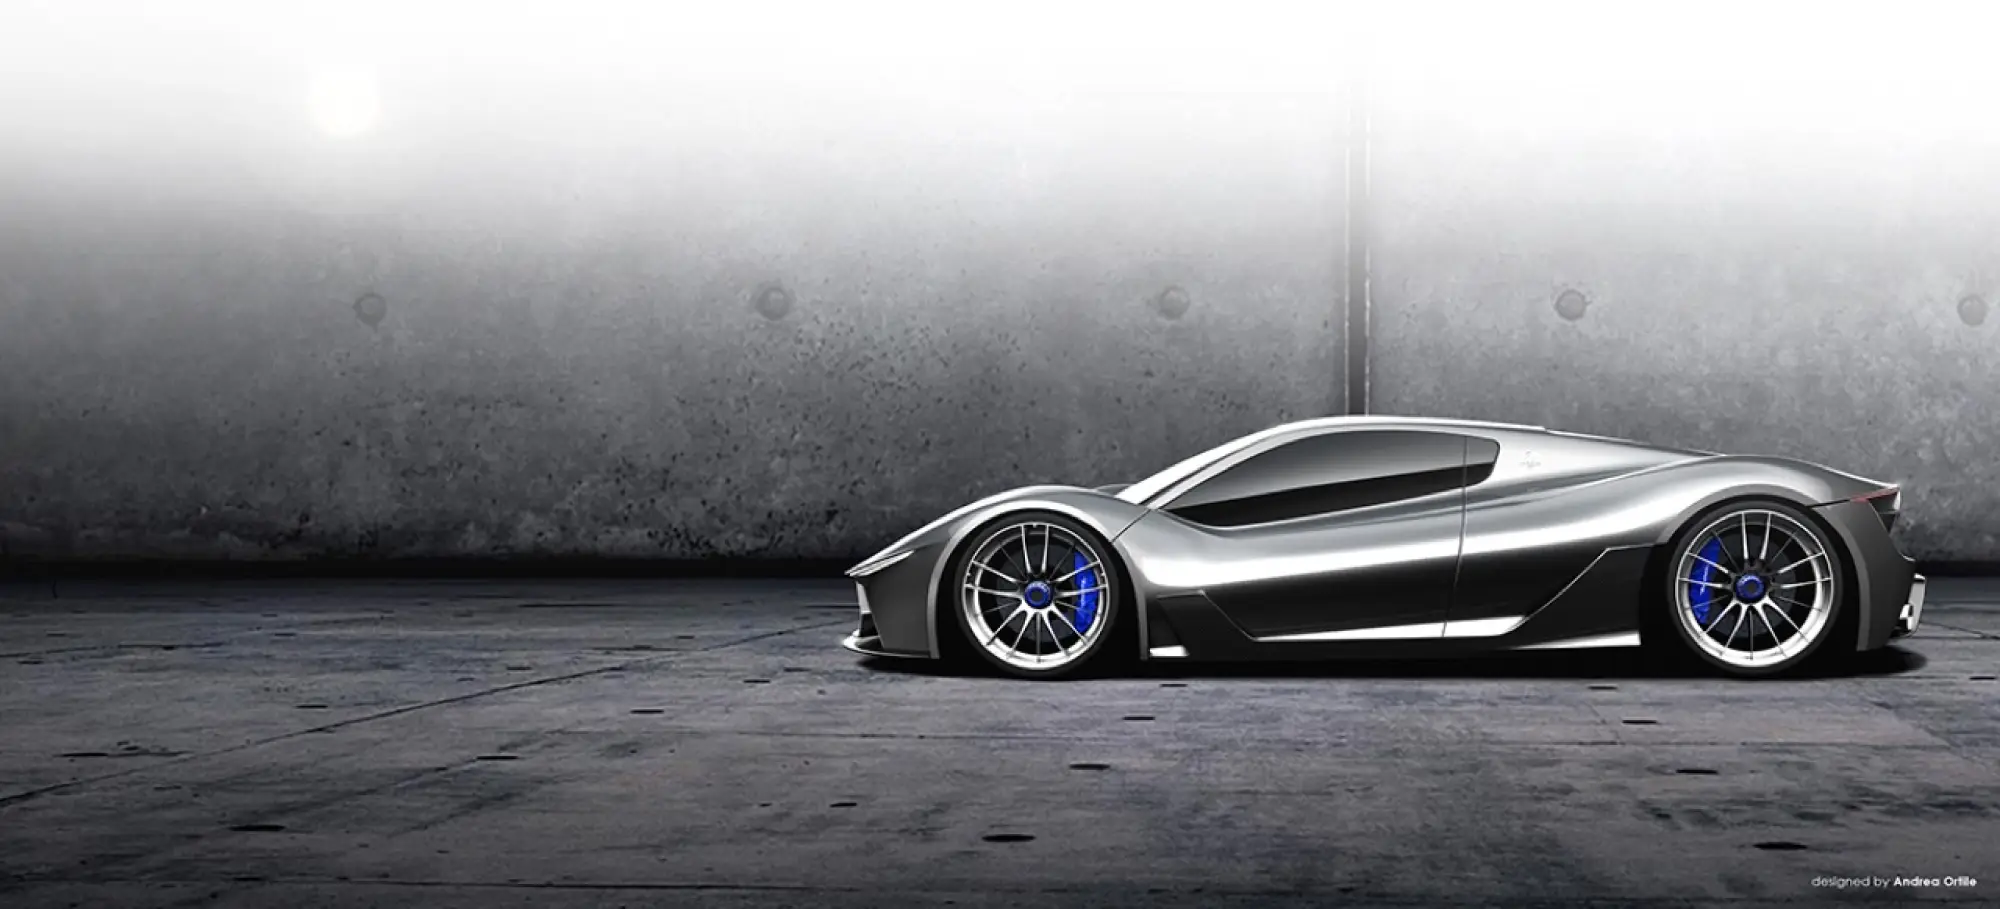 Maserati MC-63 - rendering di una hypercar concept by Andrea Ortile - 6